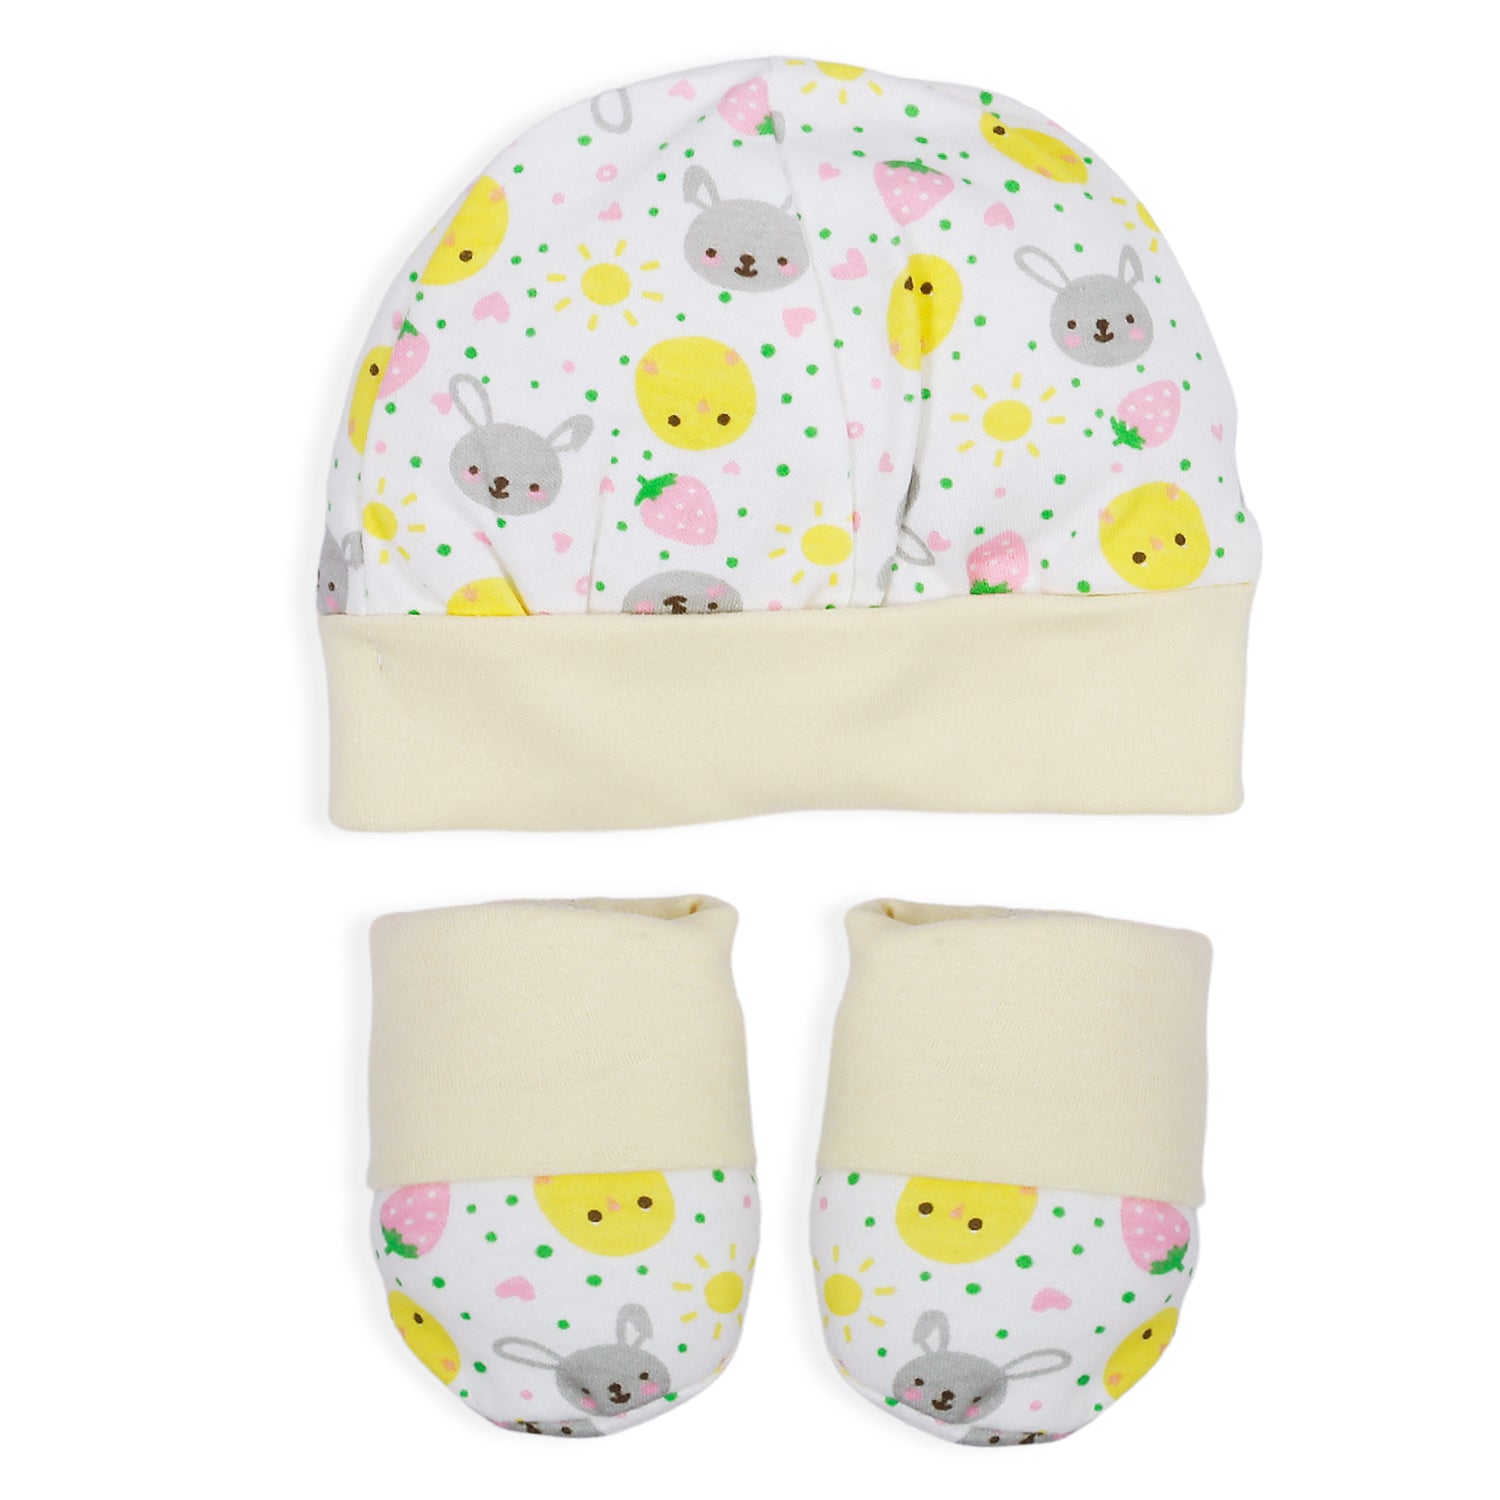 Baby Moo Strawberry Sun Newborn Gift Set 4 Pcs - Yellow - Baby Moo